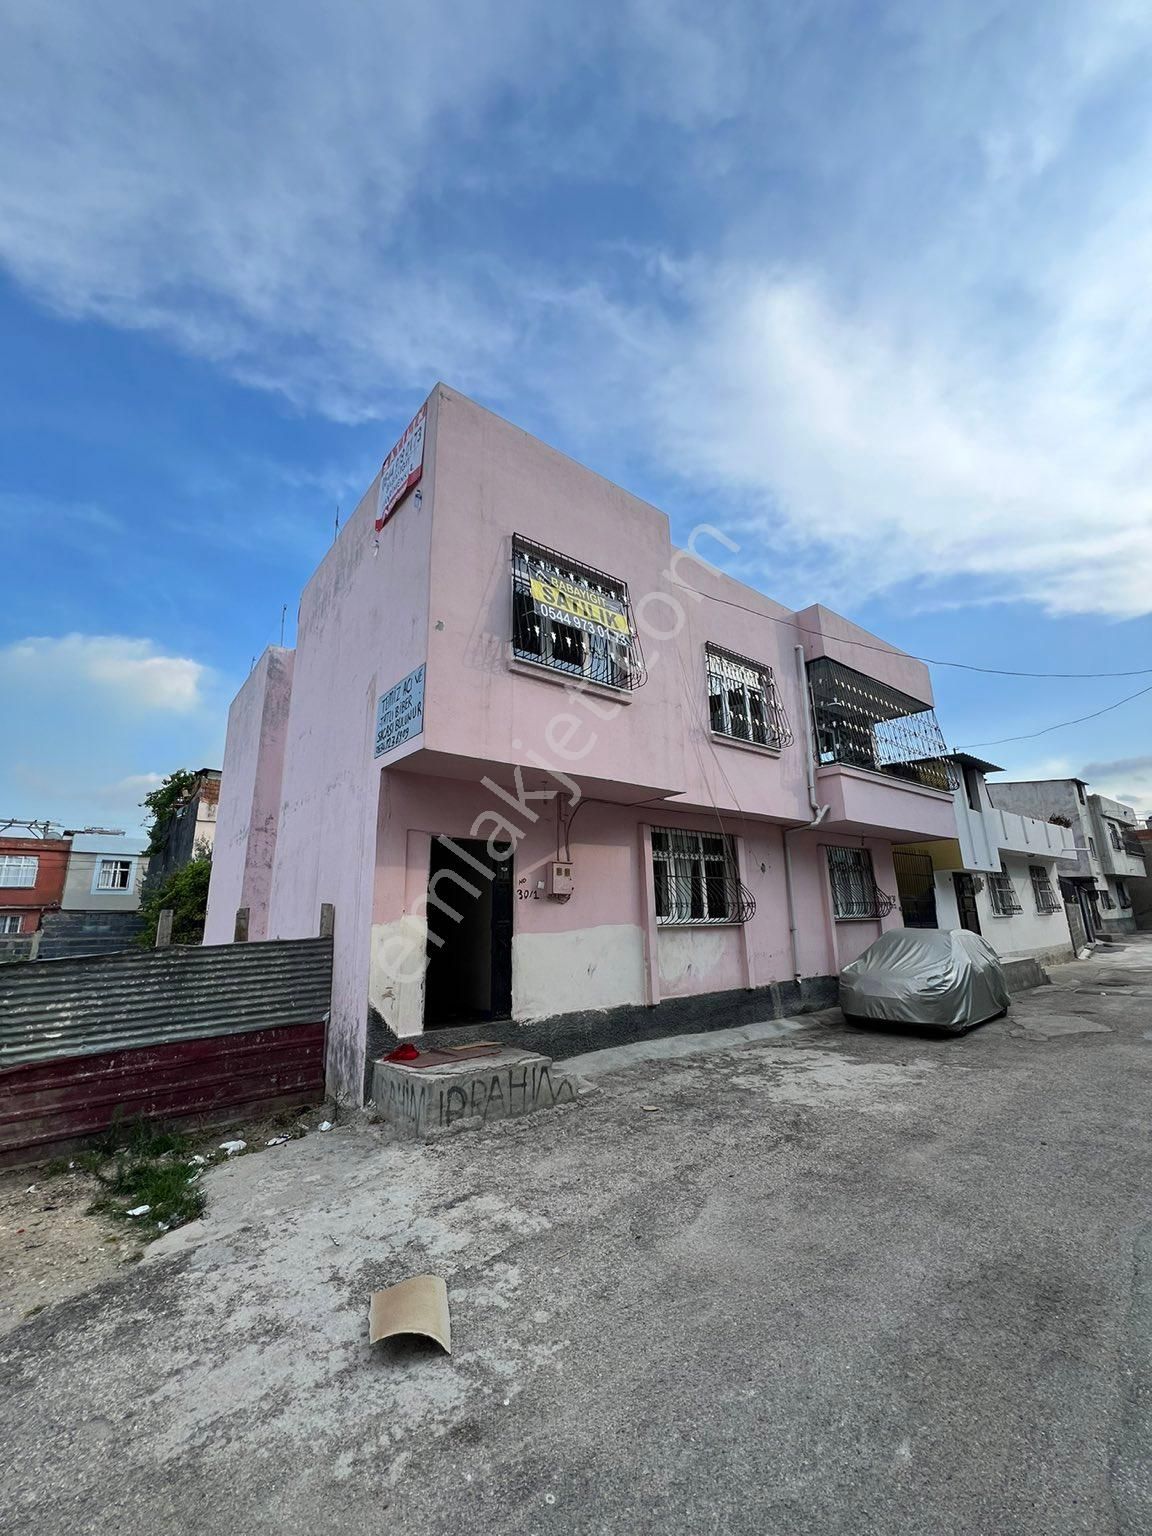 Seyhan Gülbahçesi Satılık Daire Seyhan gülbahcesinde satılık 2 katlı ev